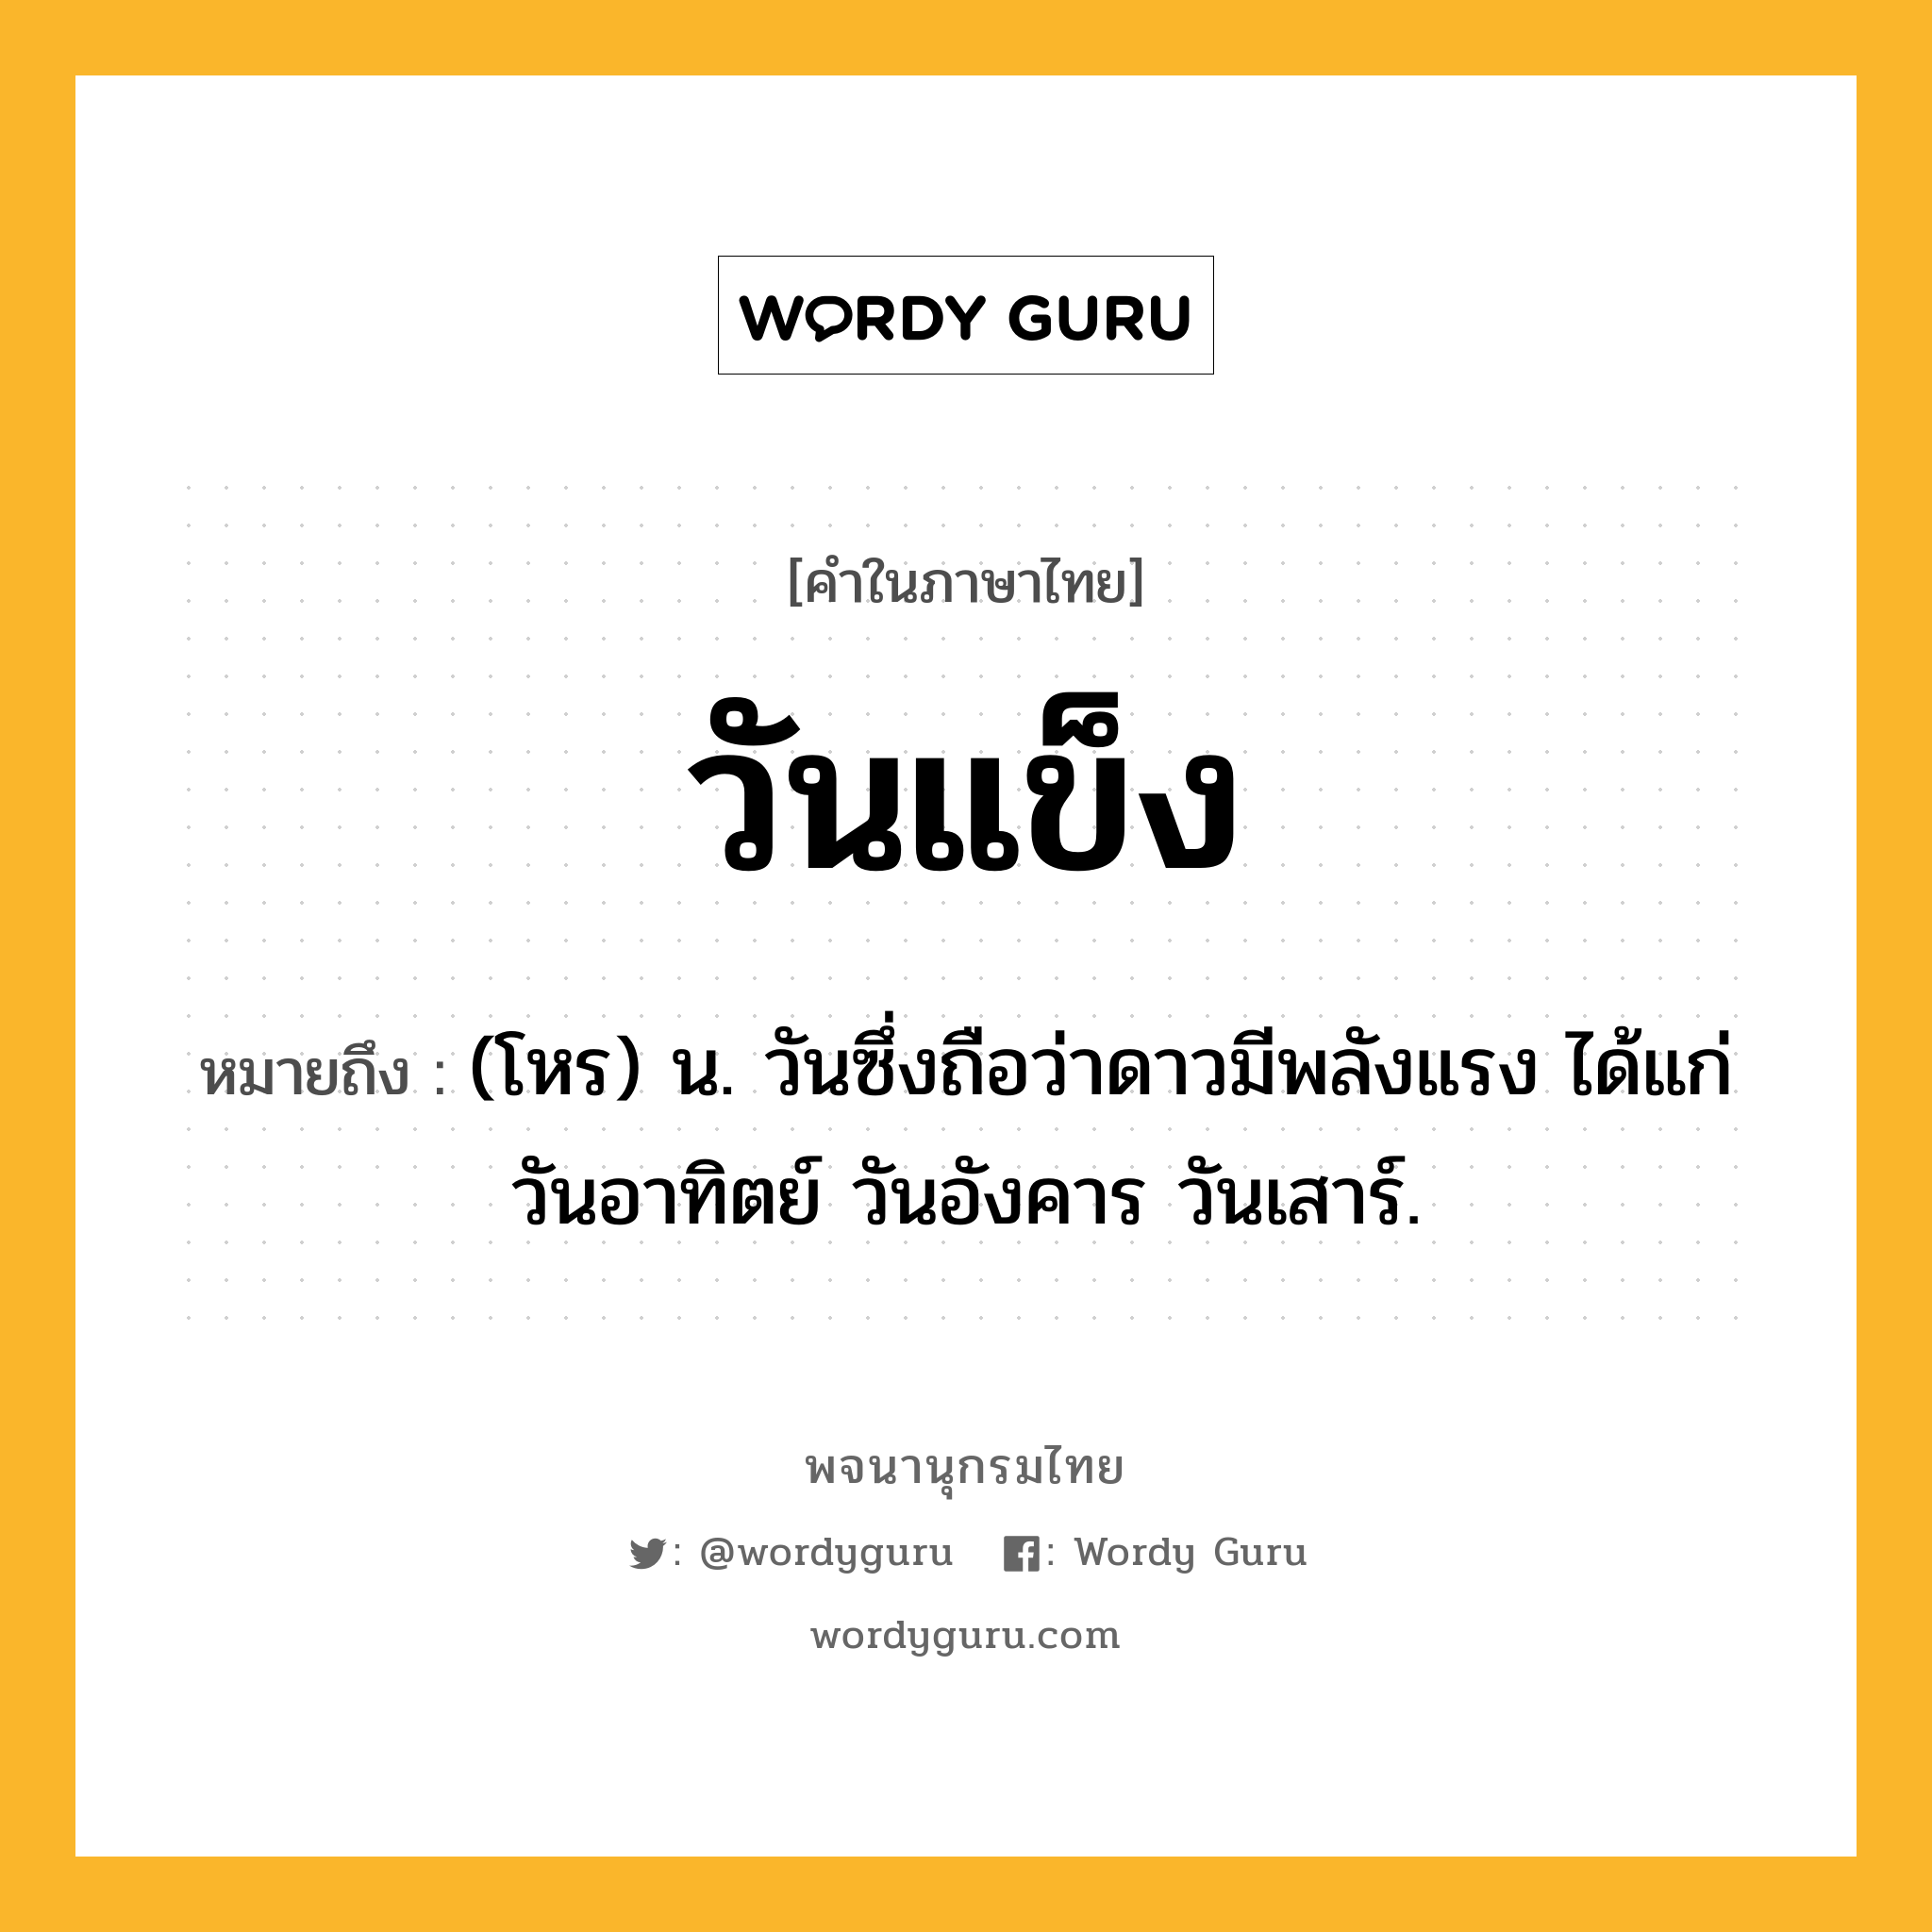 วันแข็ง ความหมาย หมายถึงอะไร?, คำในภาษาไทย วันแข็ง หมายถึง (โหร) น. วันซึ่งถือว่าดาวมีพลังแรง ได้แก่ วันอาทิตย์ วันอังคาร วันเสาร์.